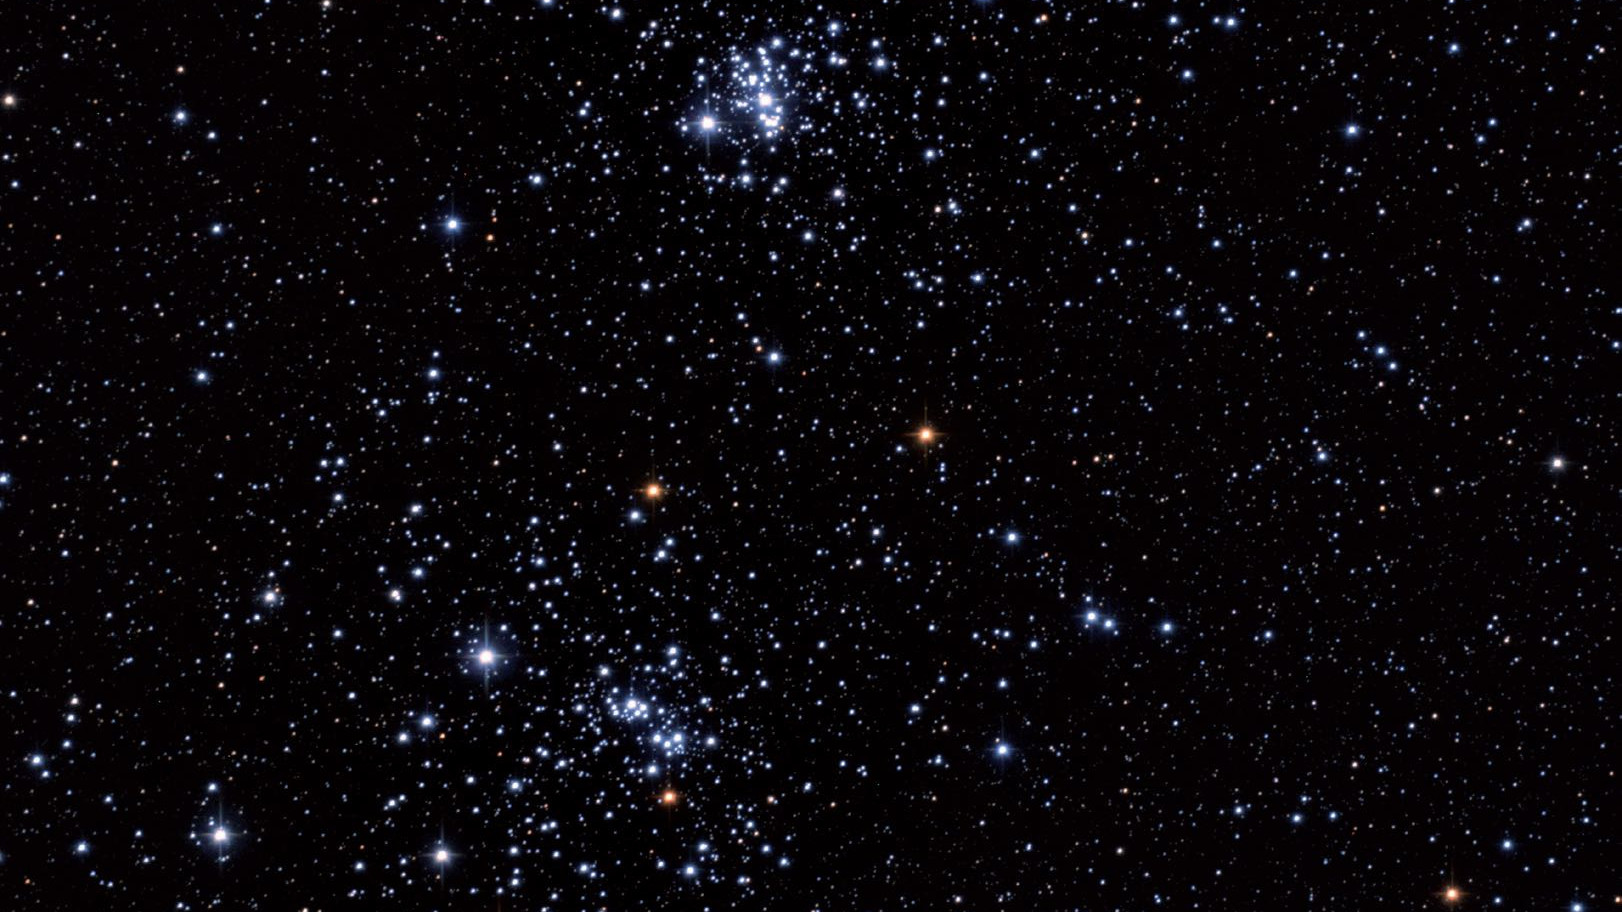 De par son étendue, le double amas h et chi Persei, également appelé NGC 869/884, est un merveilleux objet à observer avec les jumelles. Marcus Degenkolbe